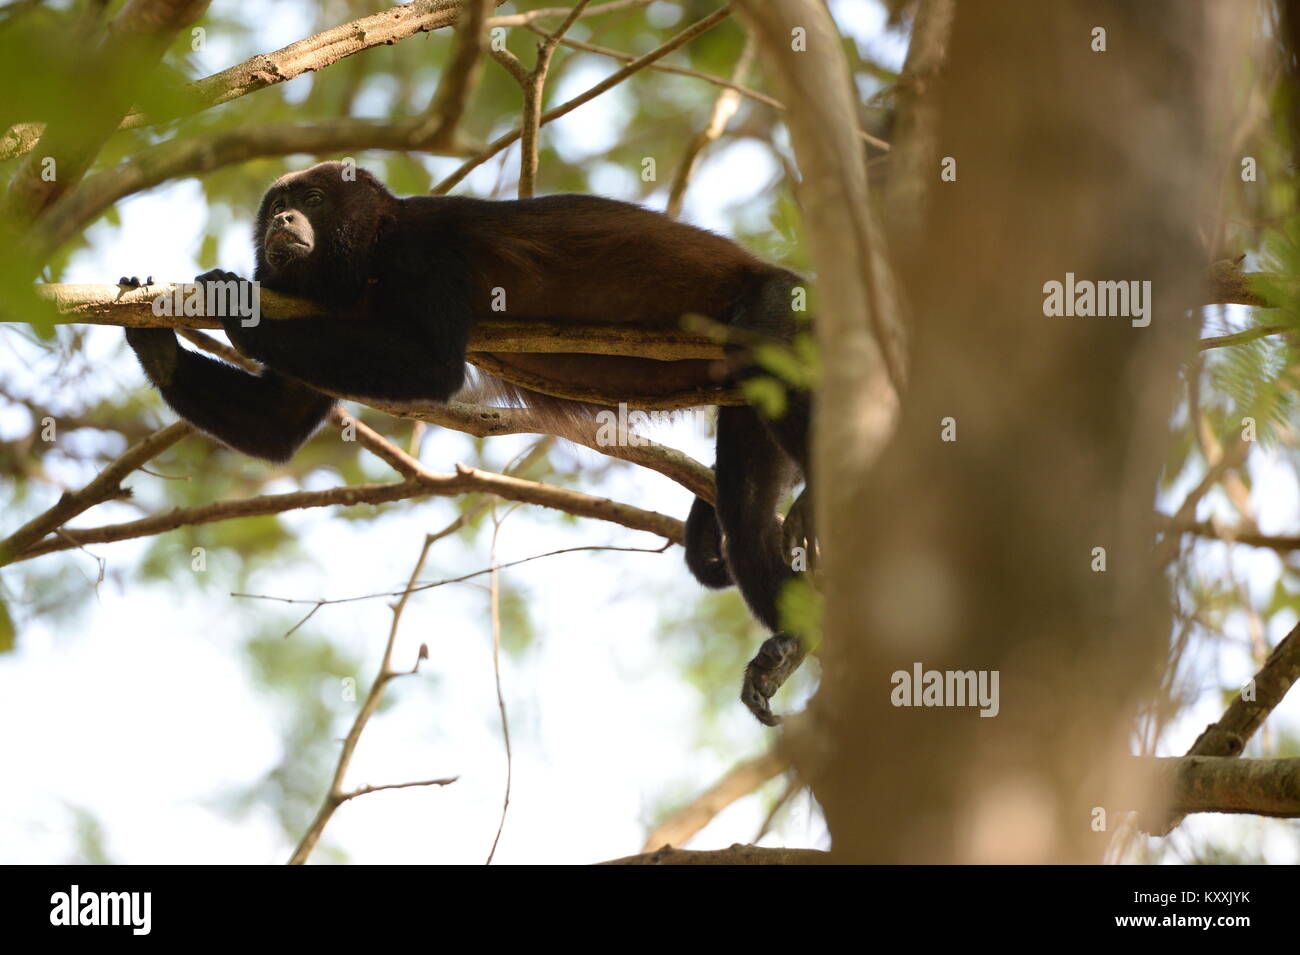 Brüllaffen führen ein ruhiges Leben Vermeidung von menschlichen Kontakt in Costa Rica. Die laute männliche kann am Tag Pause in wenigen Orten auf der Halbinsel Nicoya gehört werden Stockfoto